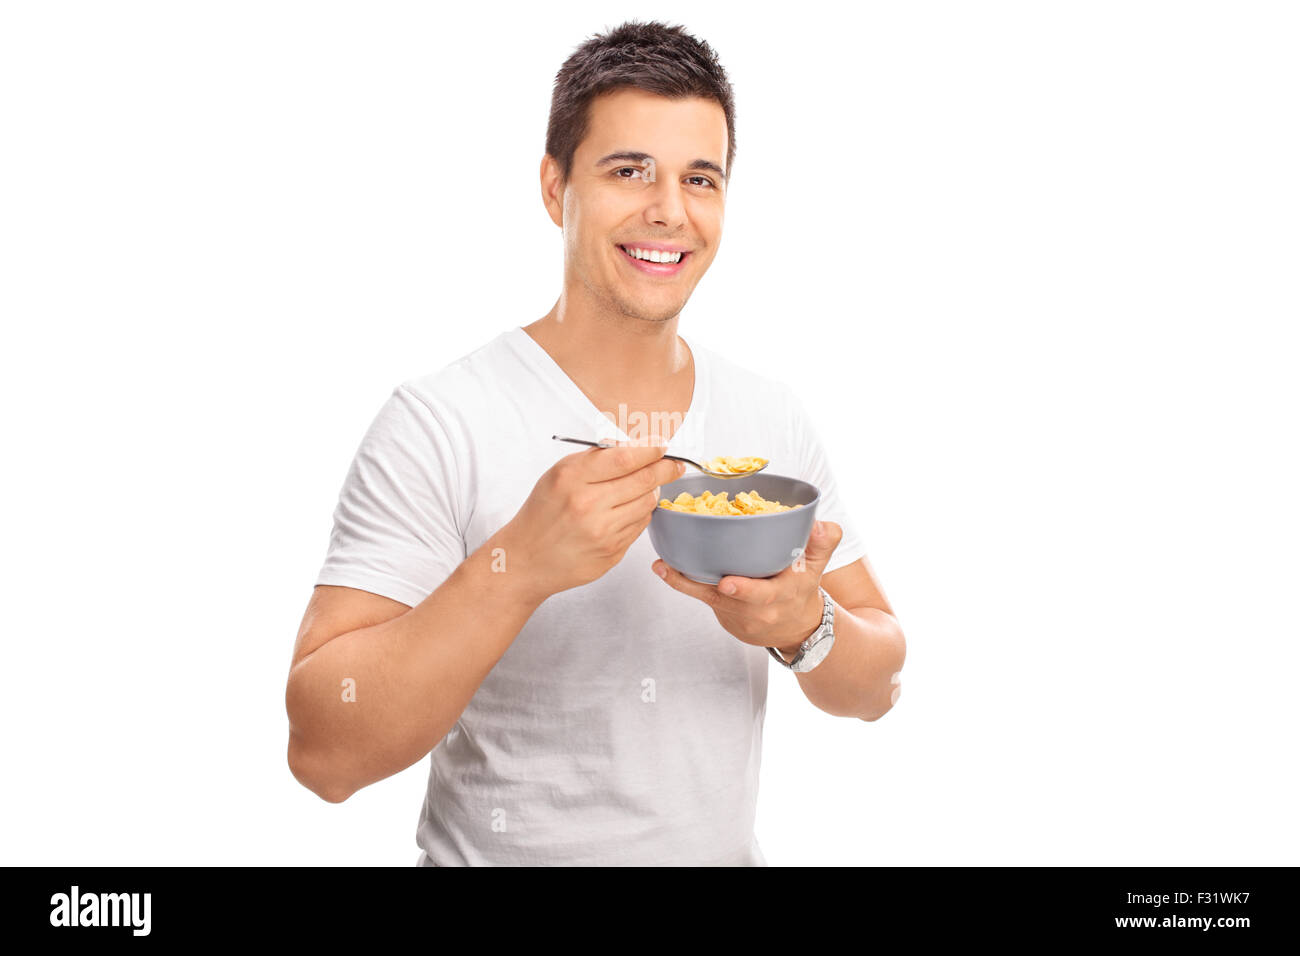 Fröhlicher junge Mensch Getreide aus einer Schüssel Essen und schaut in die Kamera, die isoliert auf weißem Hintergrund Stockfoto